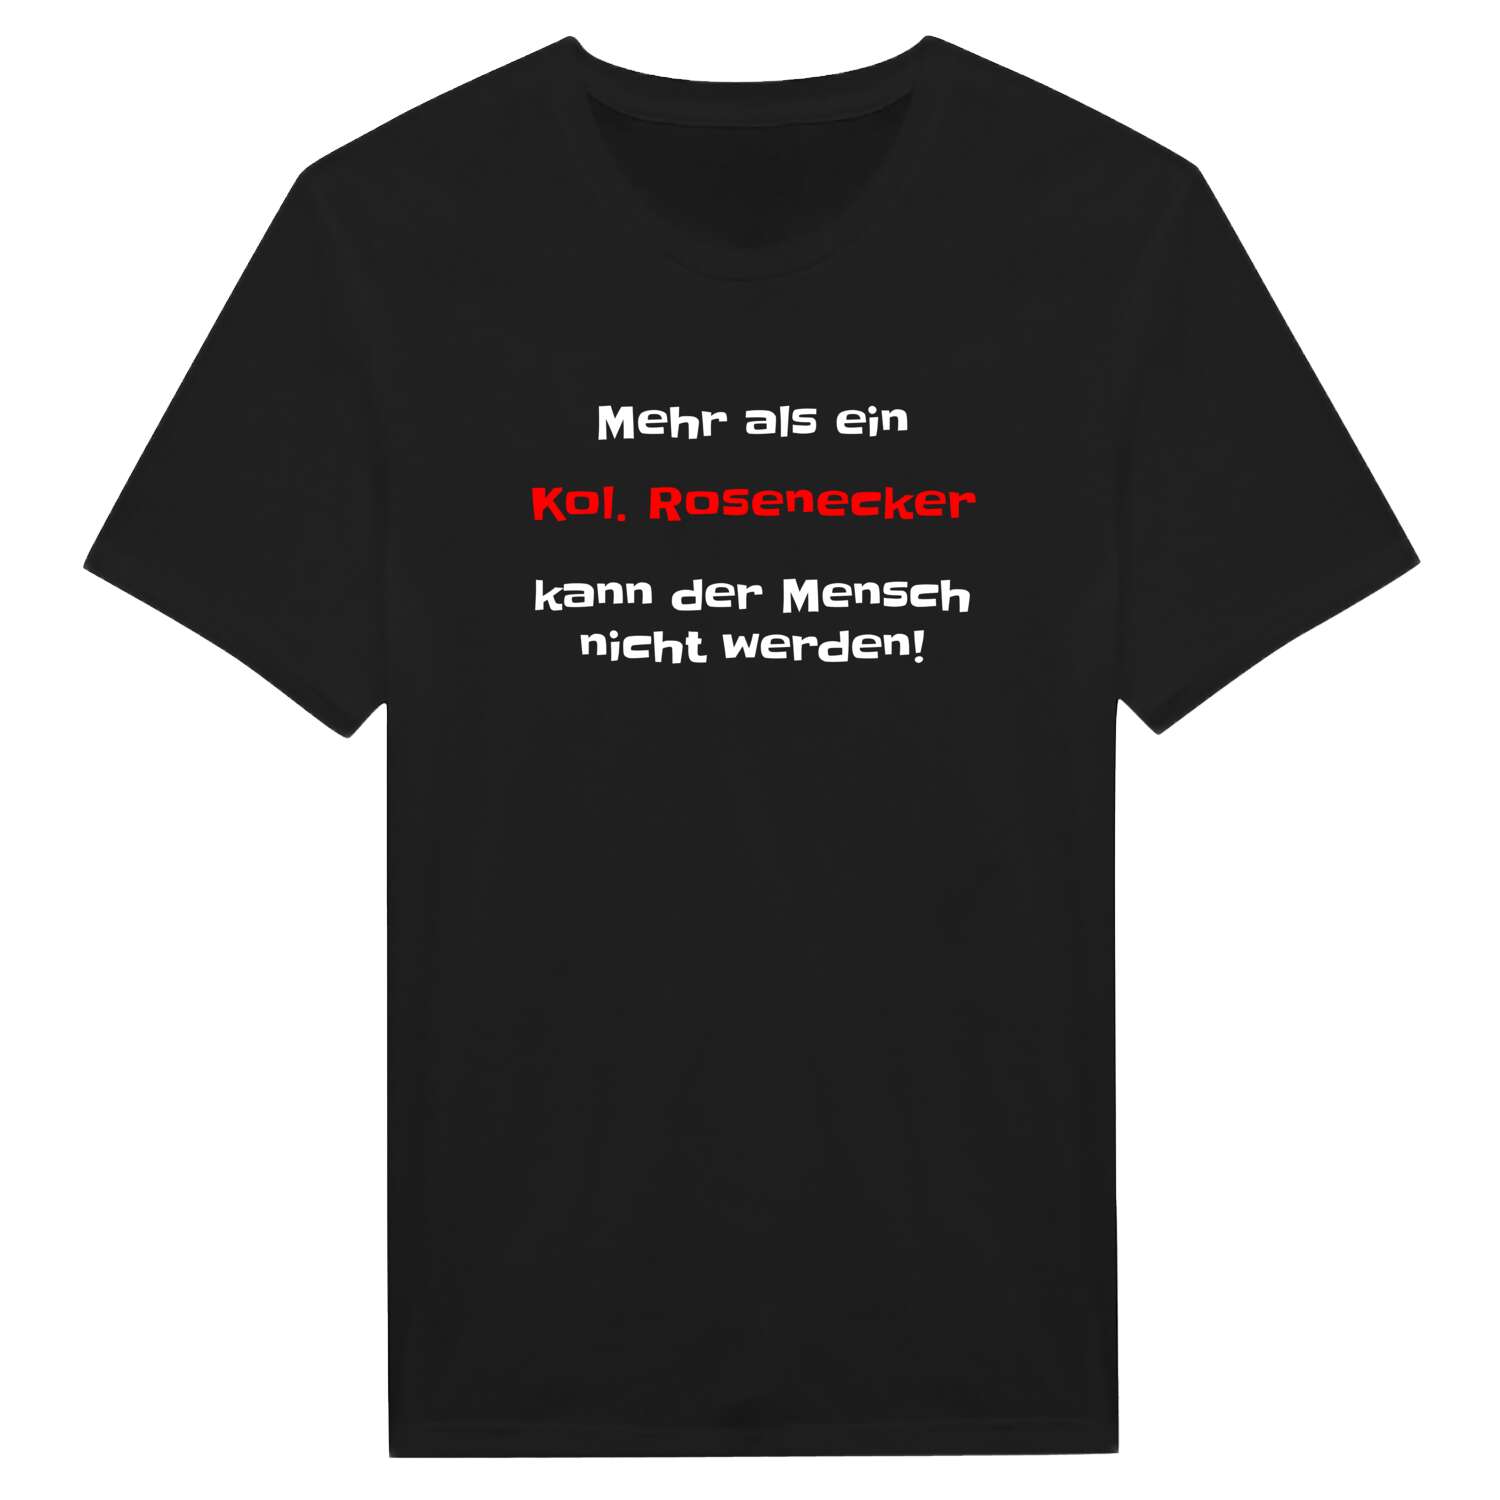 Kol. Roseneck T-Shirt »Mehr als ein«